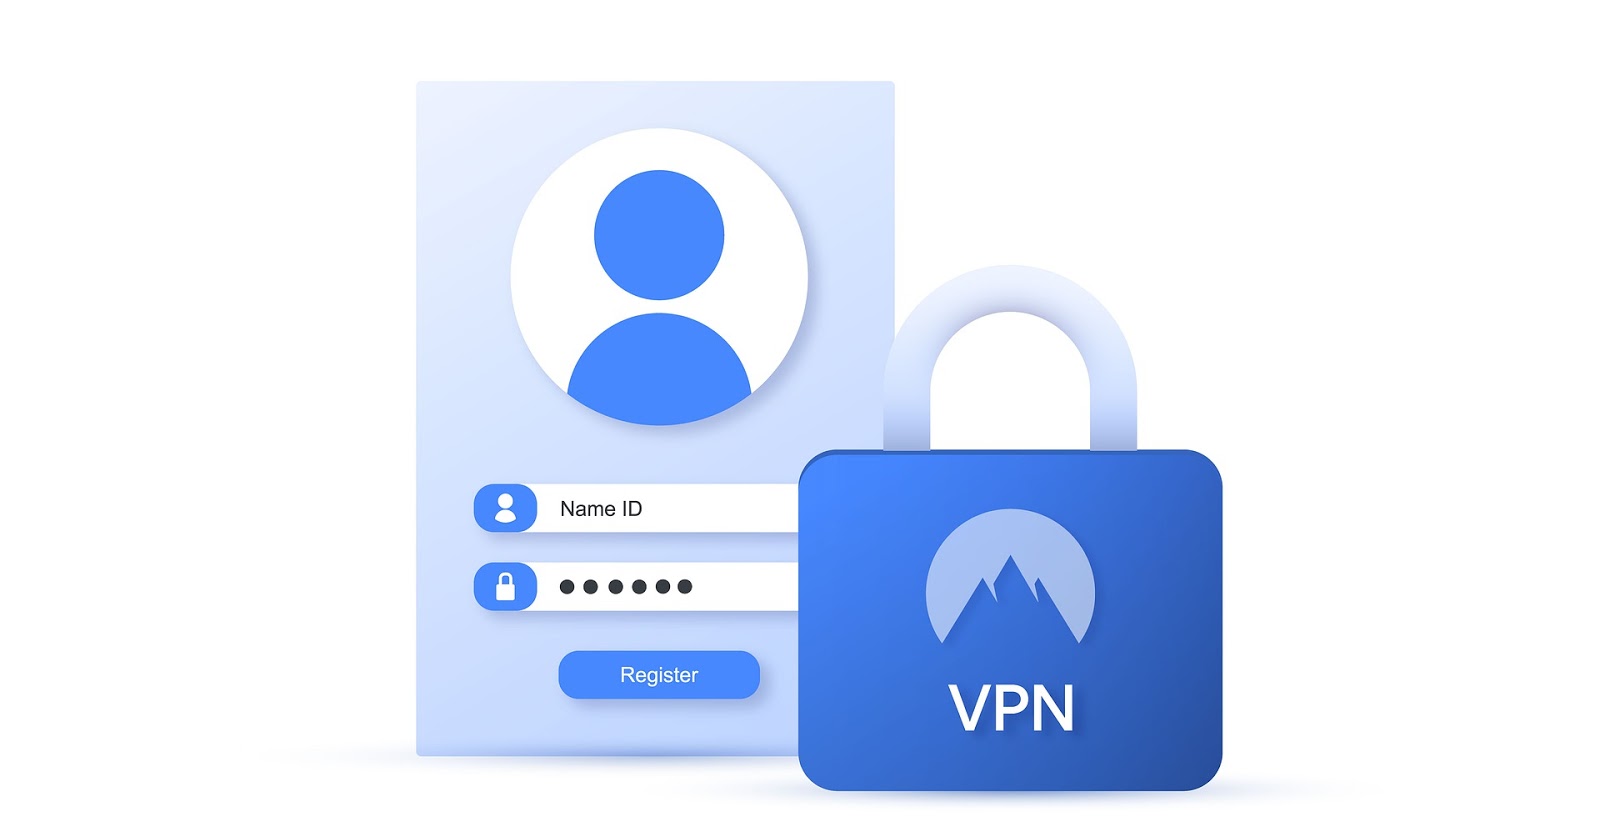 VPN, Virtual Private Network, guide for VPN, VPN Guide,Virtual Private Network Guide